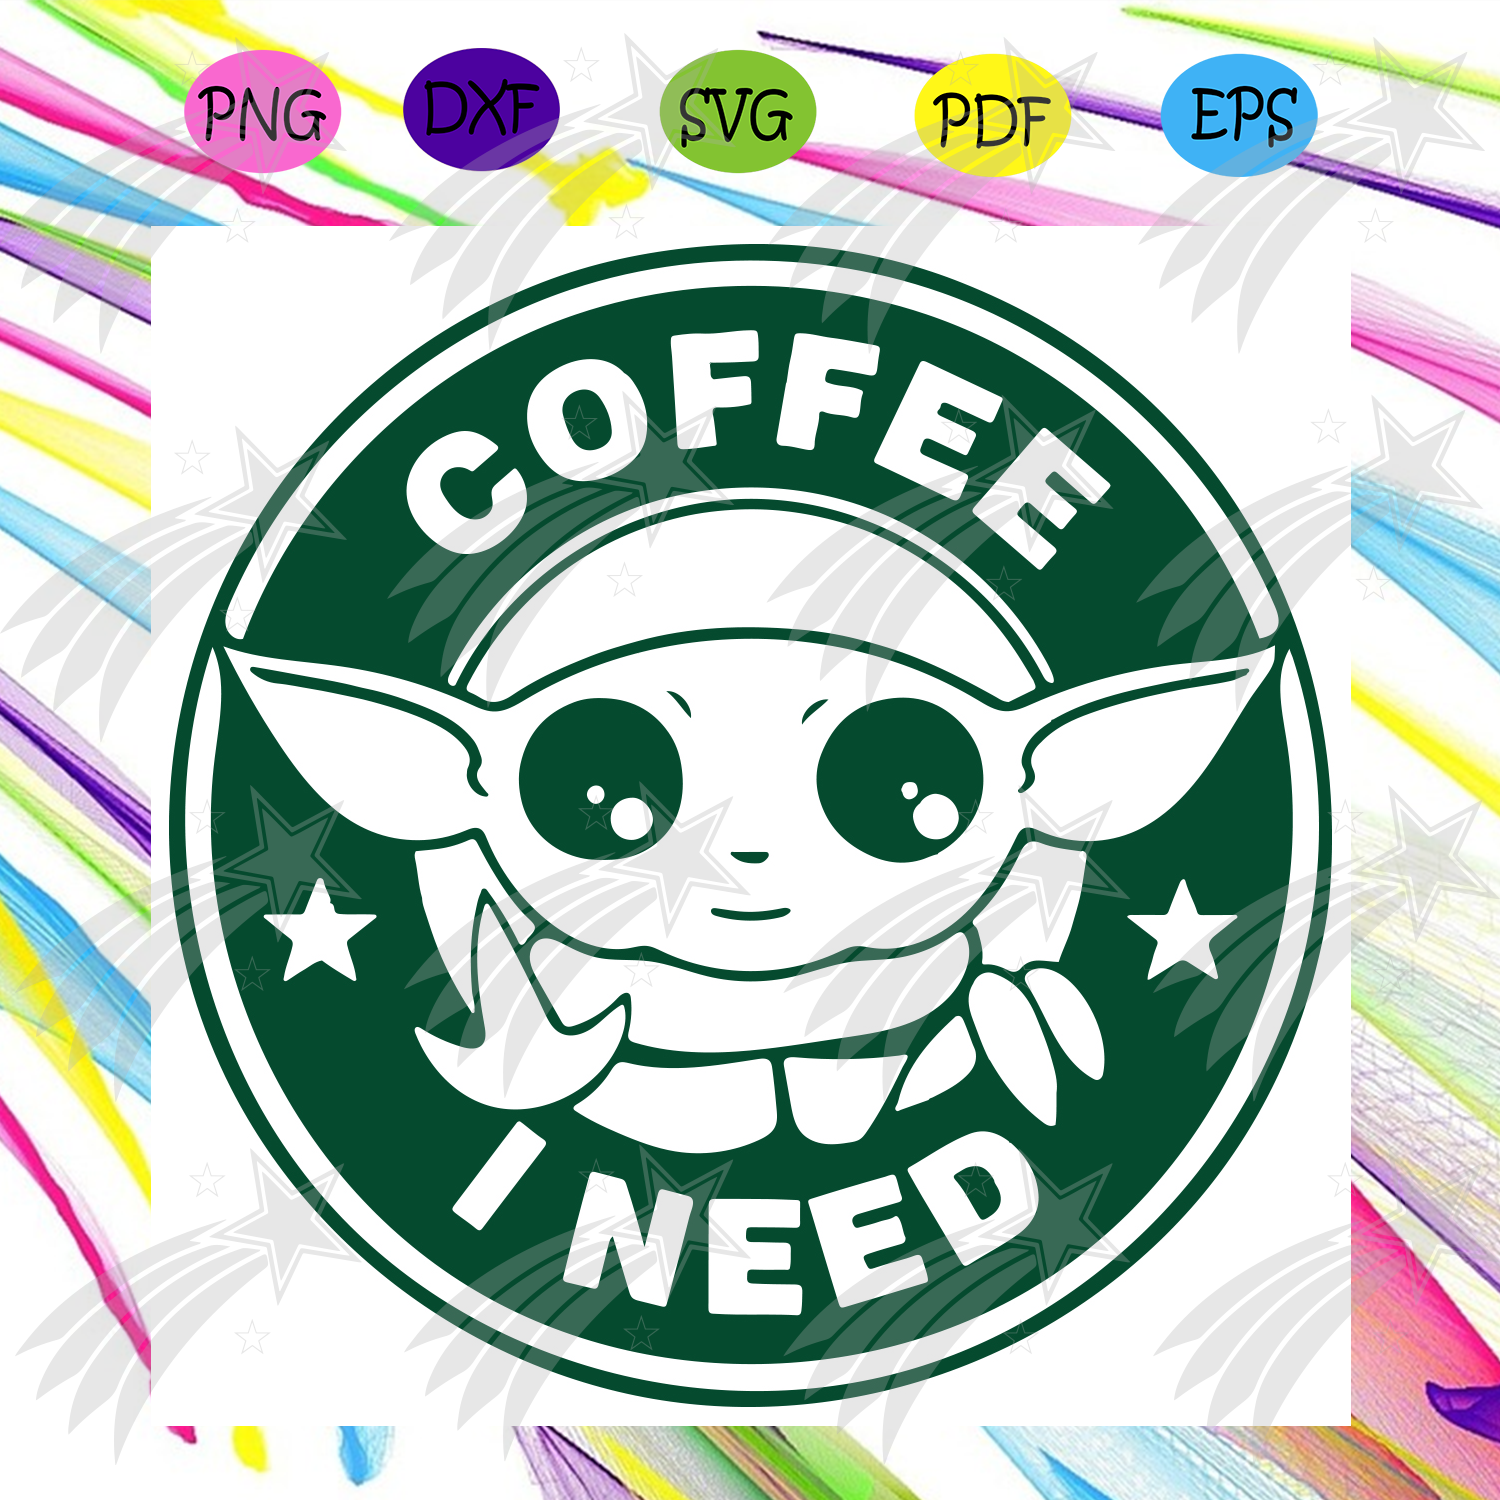 Download Baby Yoda Coffee I Need Svg Baby Yoda Svg Star War Svg Yoda Svg Coffee Svg